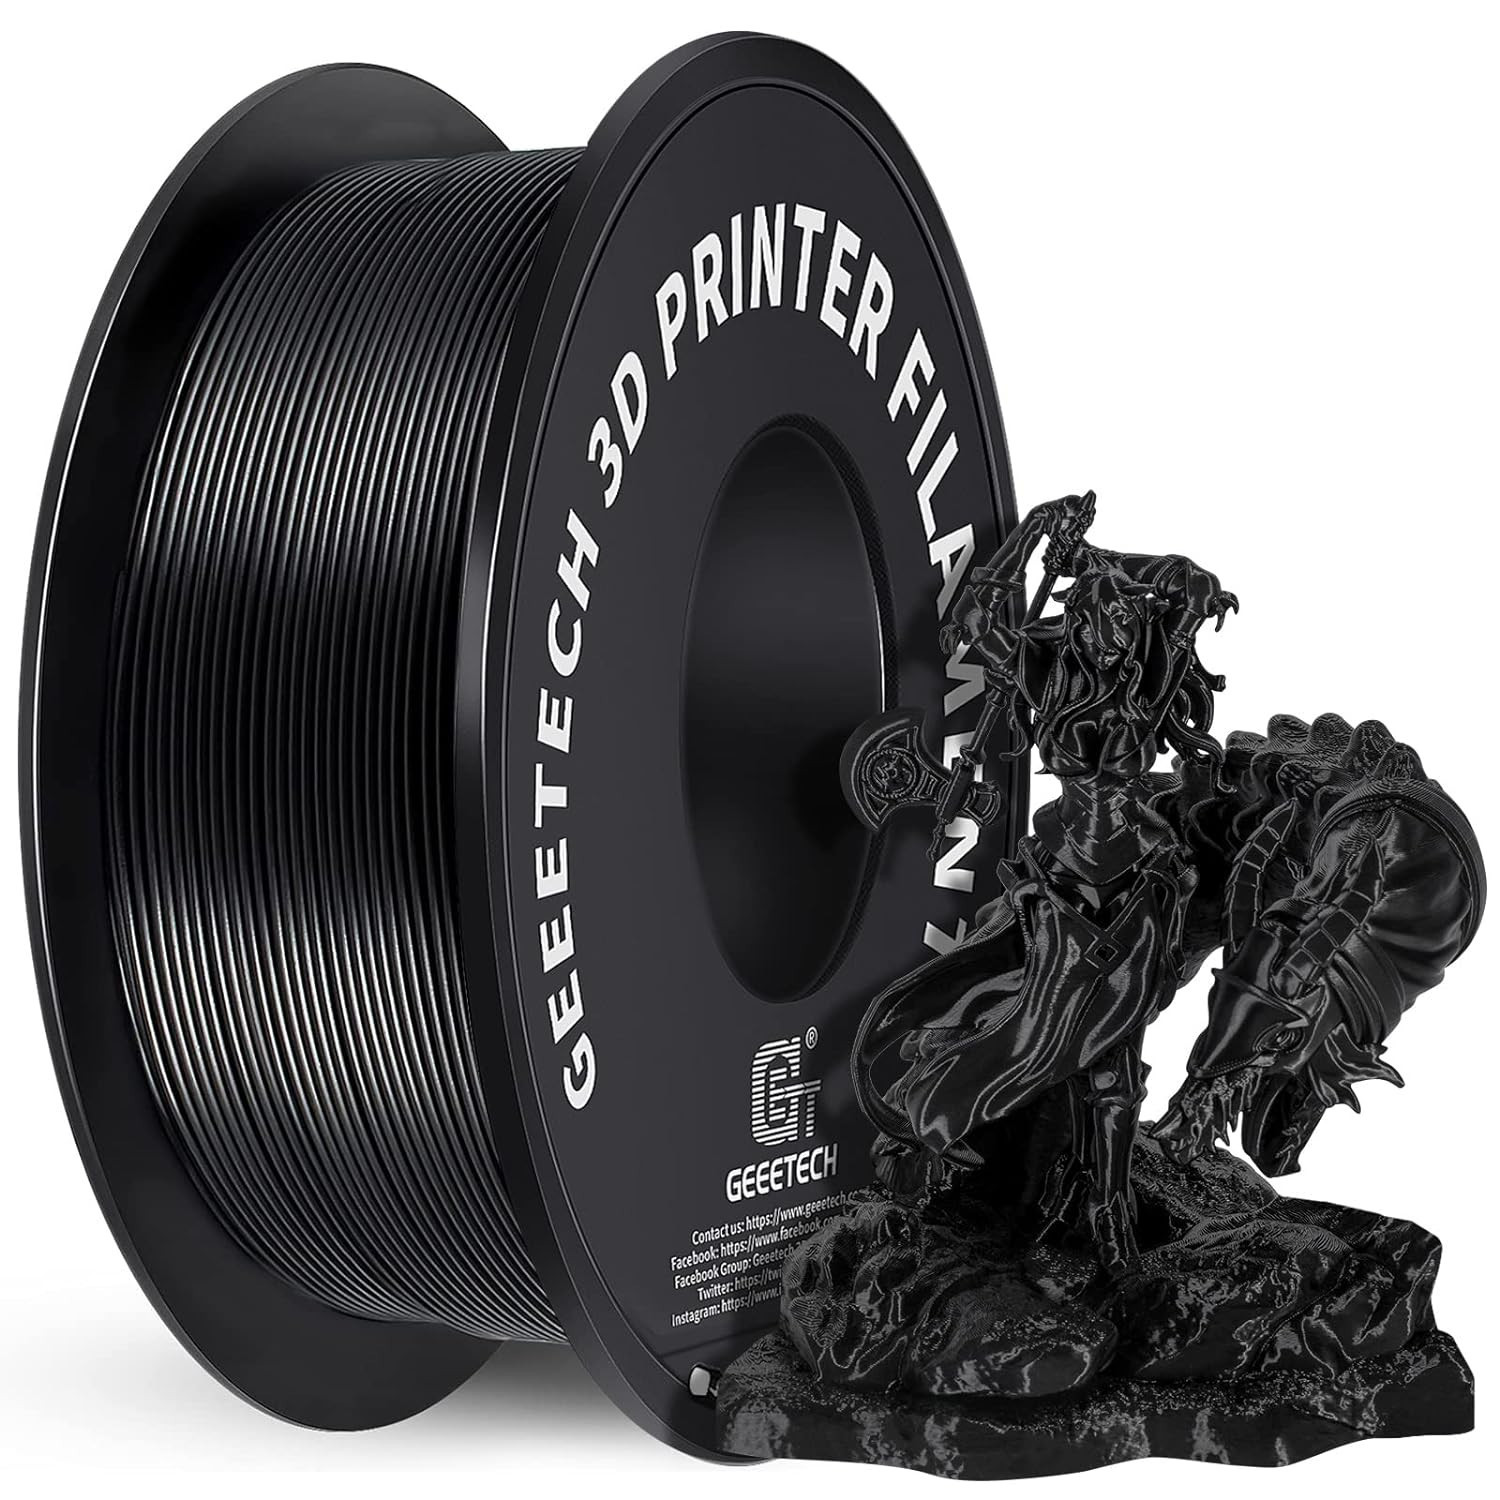 PLA Filament 1.75mm , GEEETECH New 3D Printing Filament PLA for 3D Printer and 3D Pen, 1kg 1 Spool